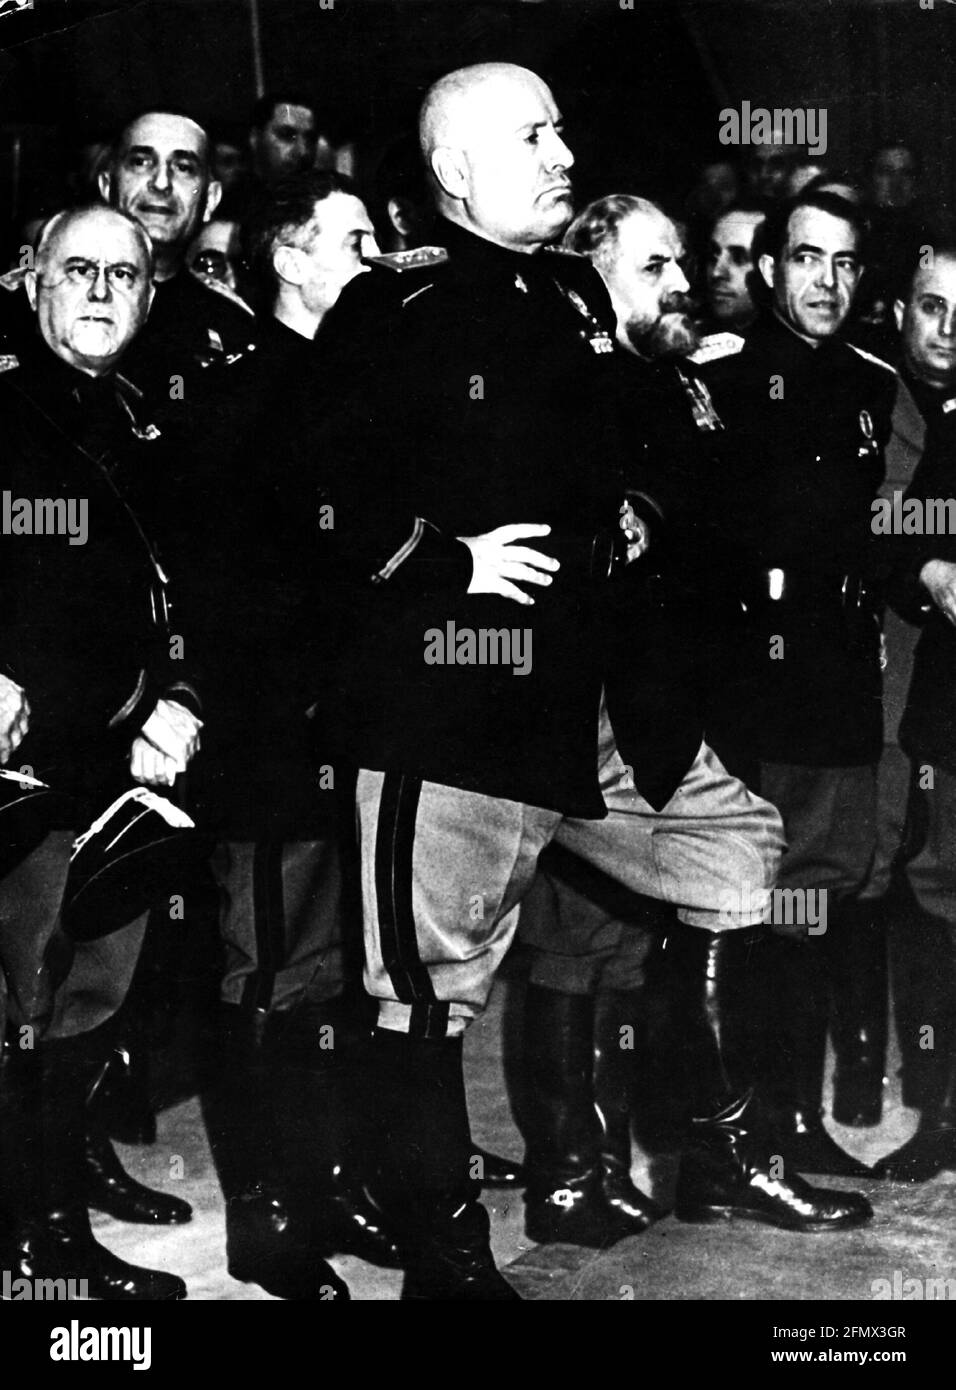 Mussolini, Benito, 29.7.1883 - 28.4.1945, italienischer Politiker, Premierminister 30.10.1922 - 25.7.1943, volle Länge, 1930er Jahre, NUR REDAKTIONELLE VERWENDUNG Stockfoto